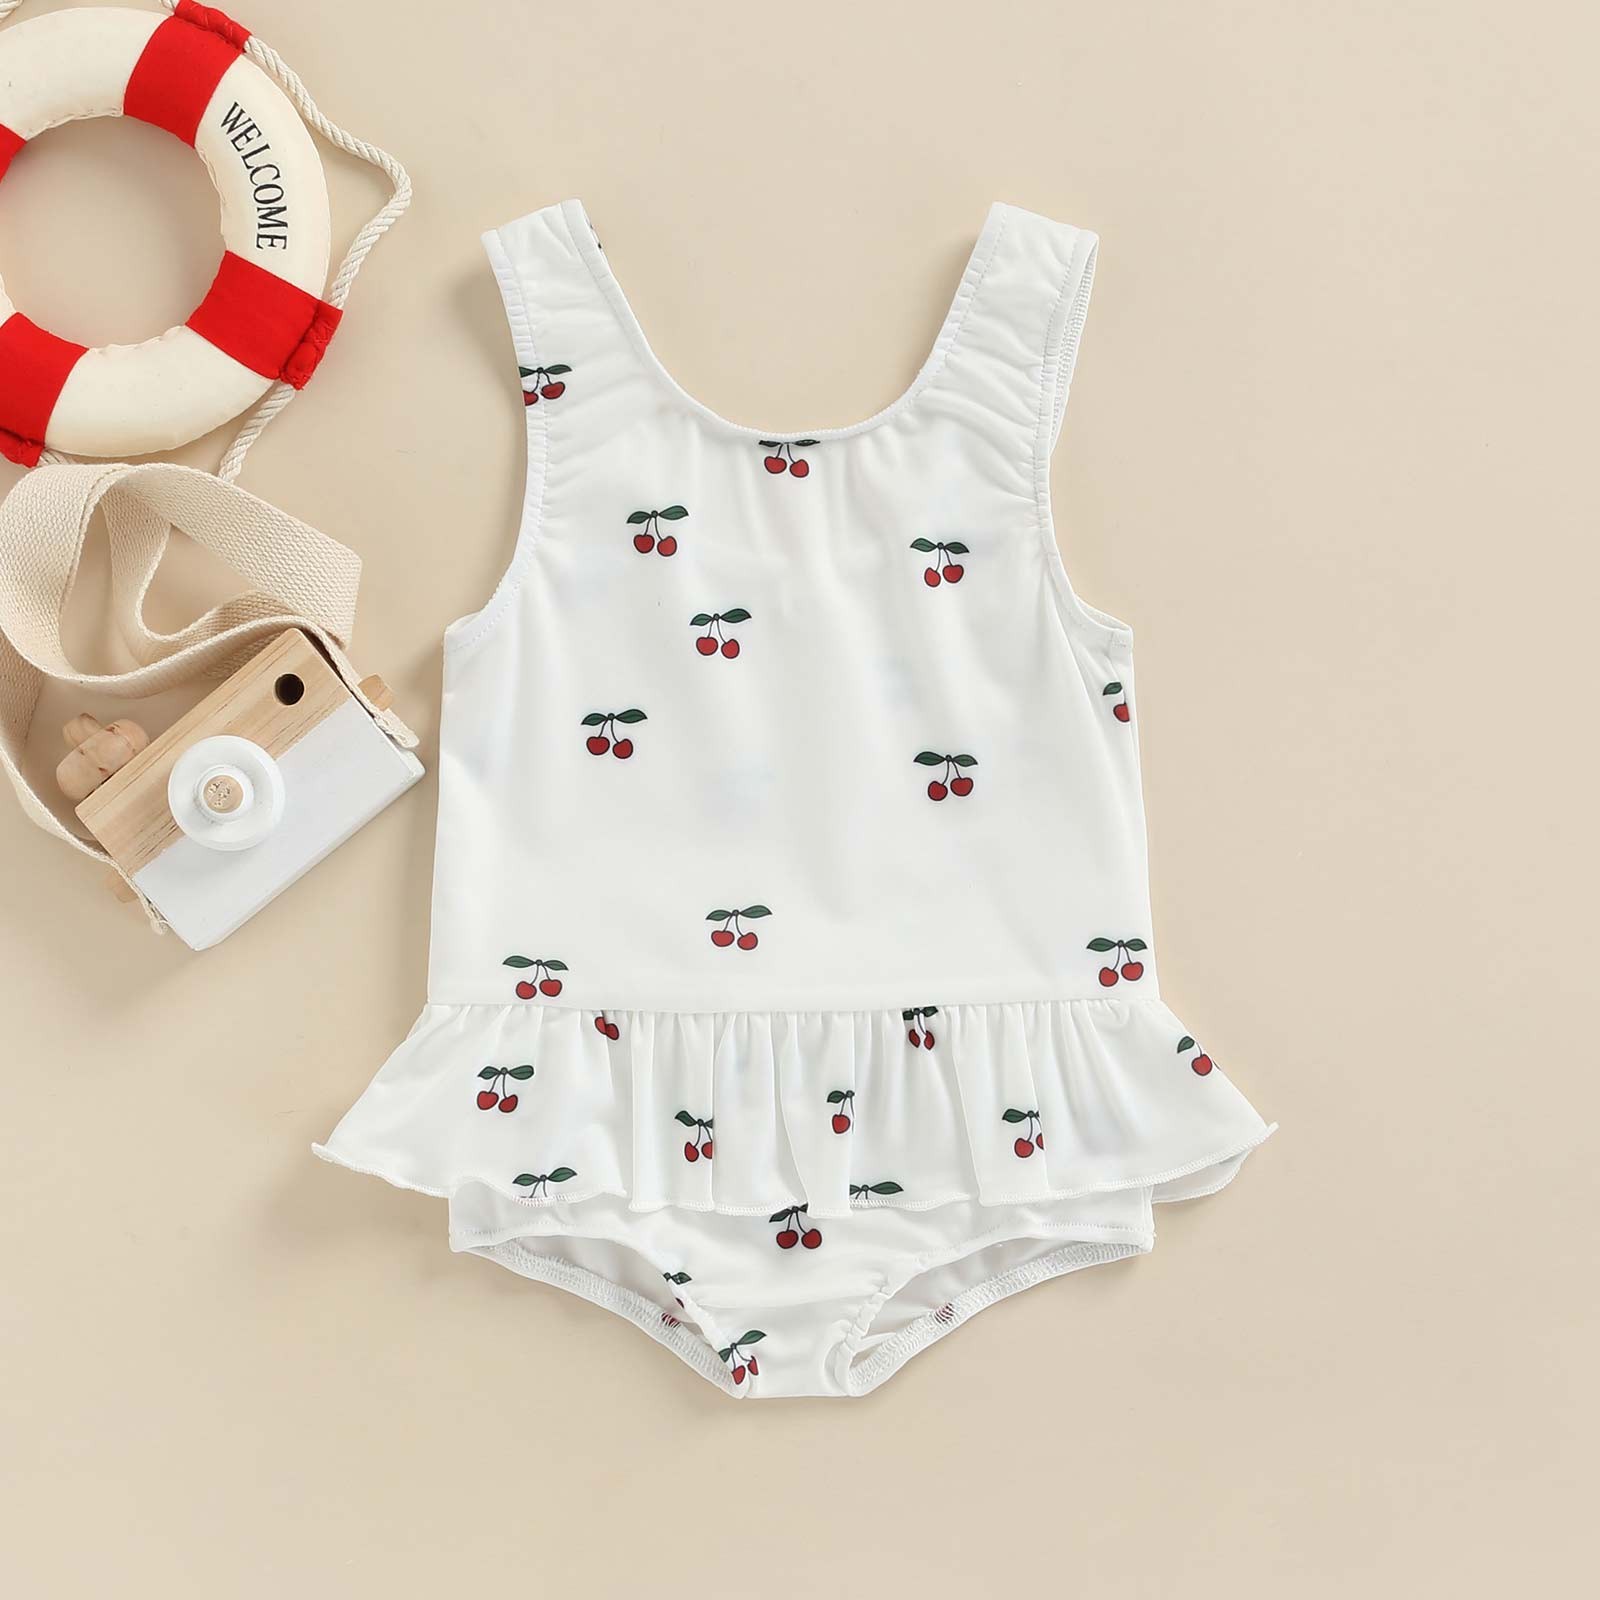 Newborn Infant Baby Girls Swimwear Cherry Lemon Sun Print Swimwear Beachwear Bathing Suit Costumes D35